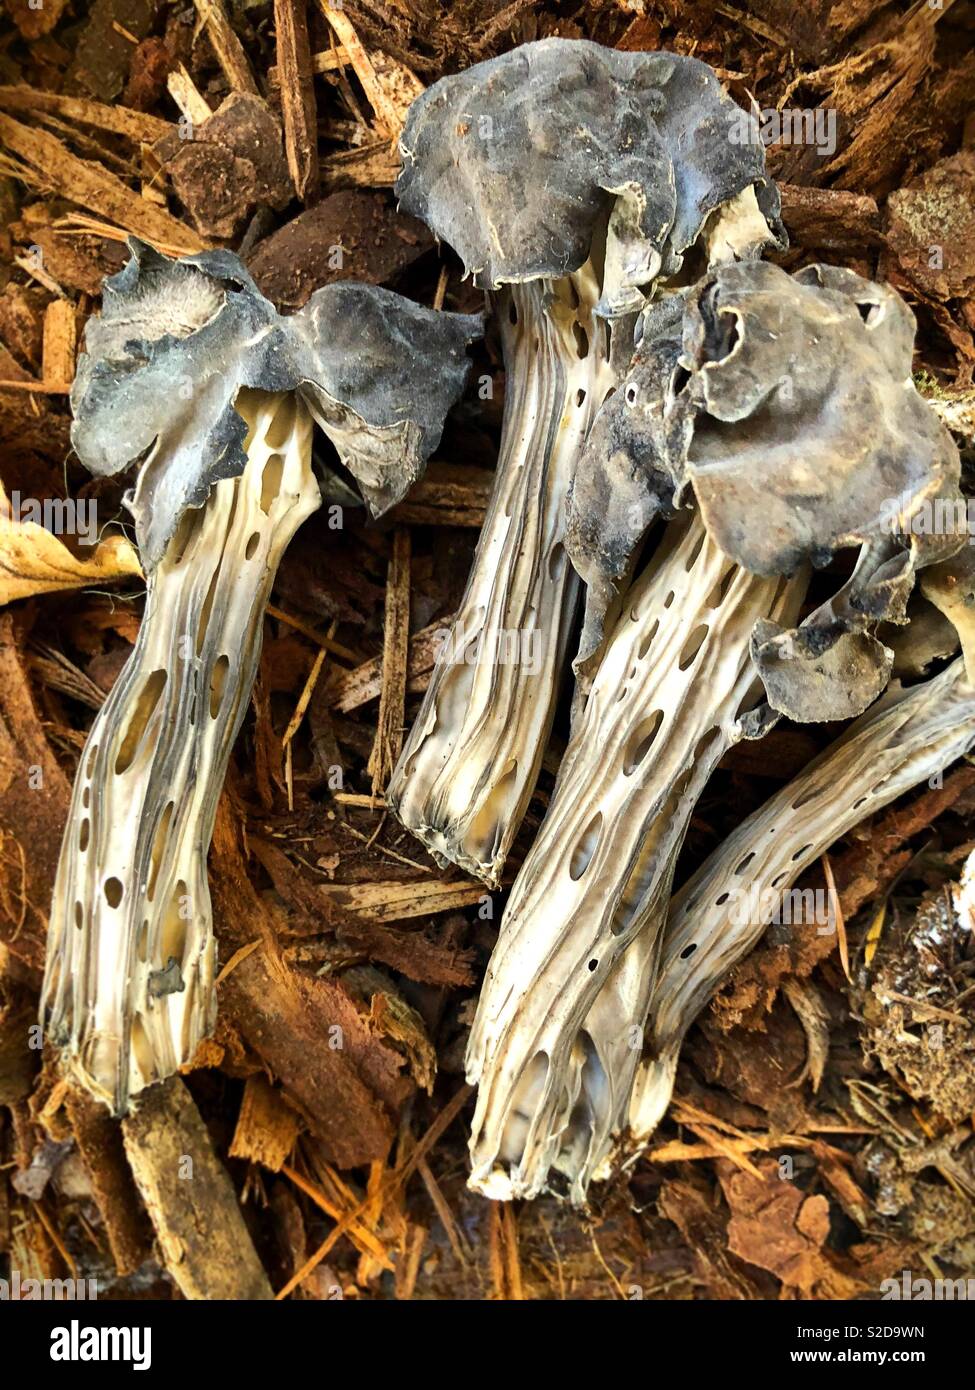 Helvella Vespertina mushrooms. Stock Photo